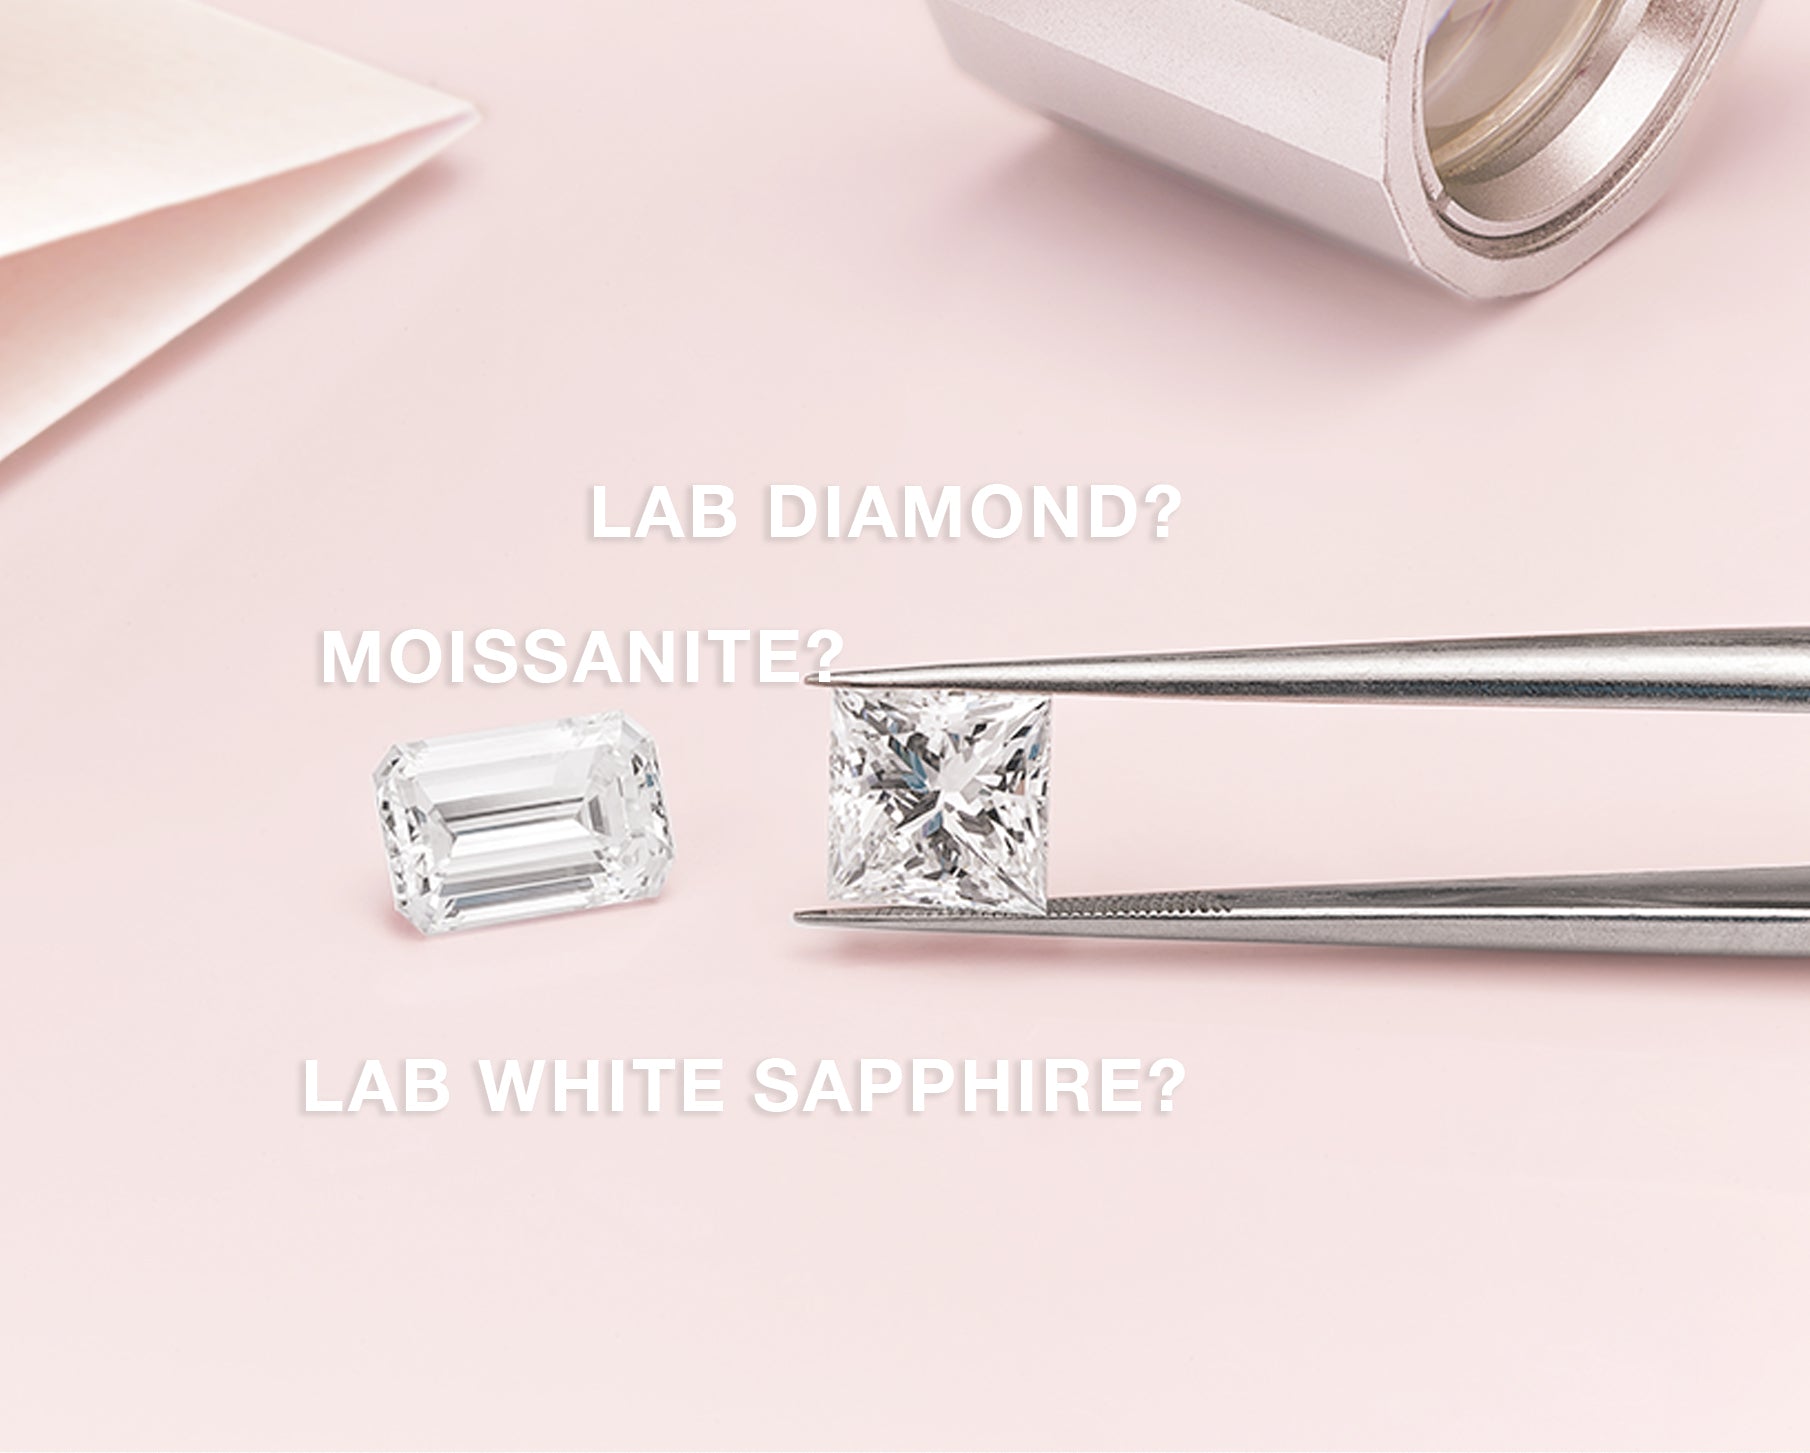 Jamie Park Jewelry Moissanite, Lab Diamond, Lab White Sapphire